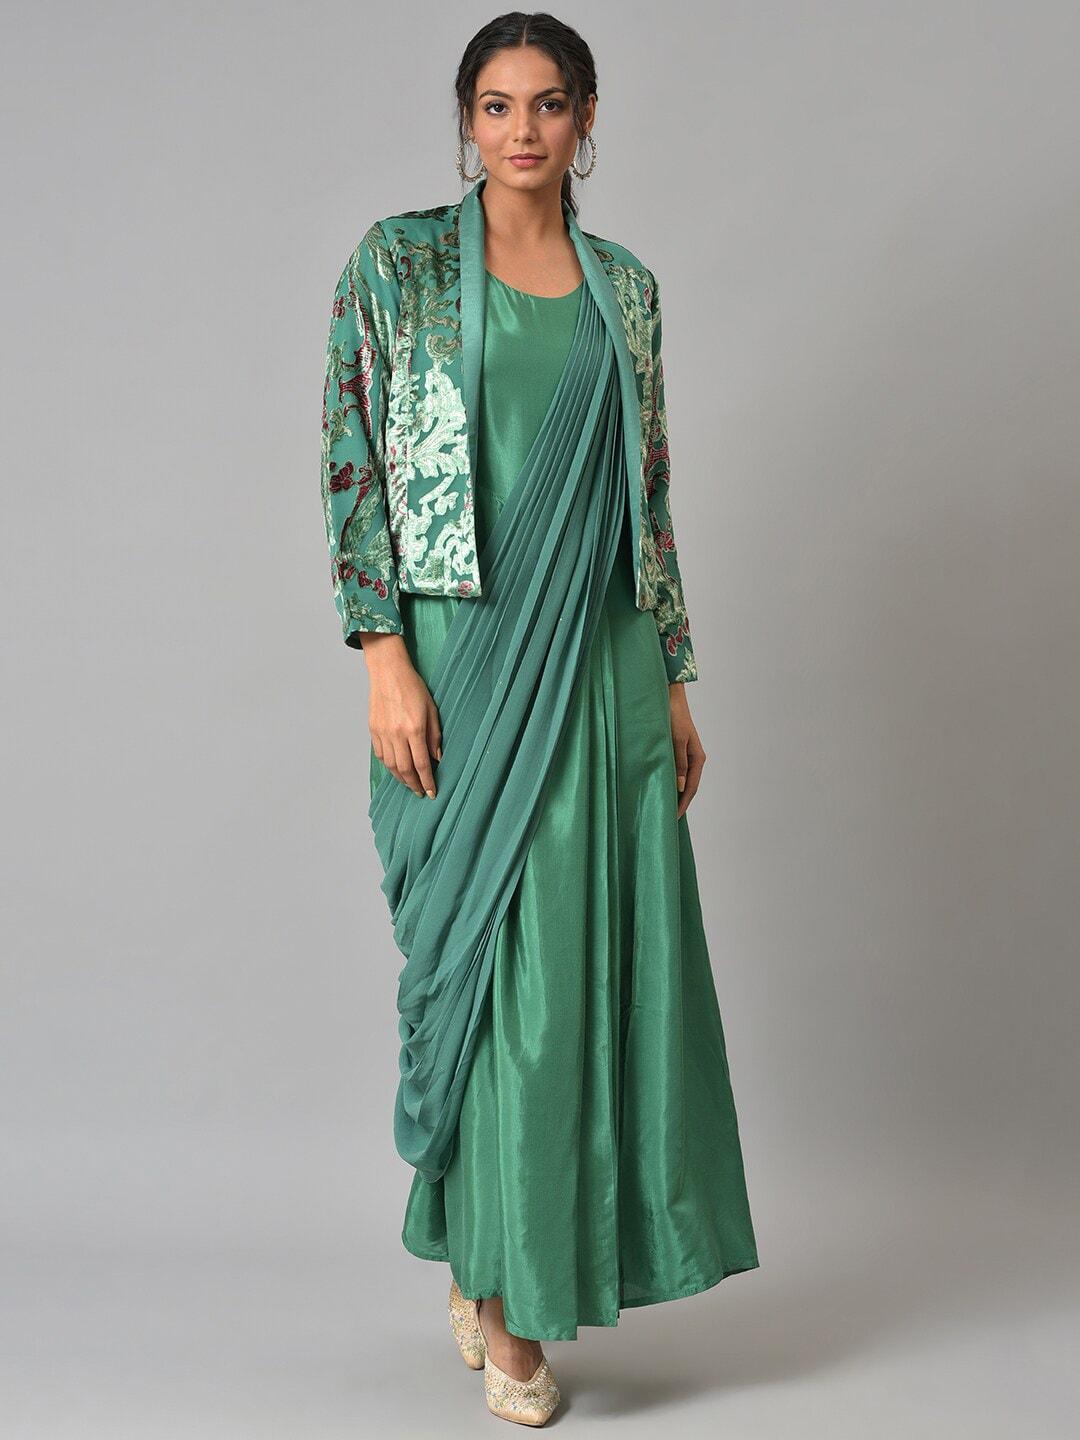 wishful-green-chiffon-ethnic-maxi-dress